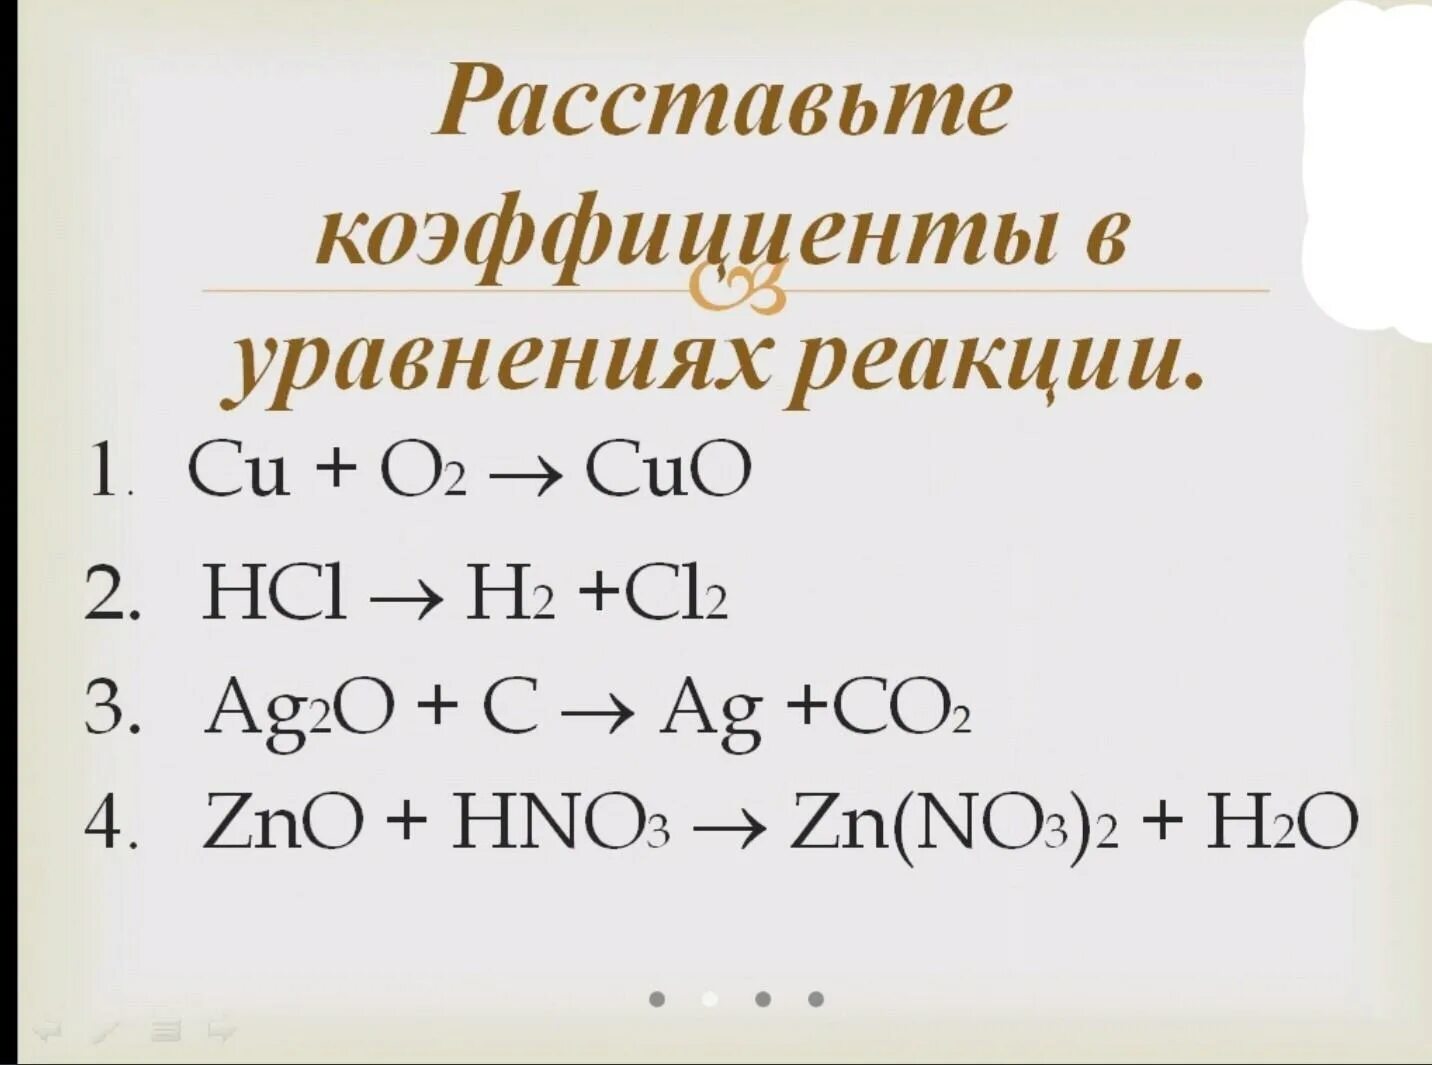 Zno co c. Задание на расстановку коэффициентов. Задачи на расстановку коэффициентов в химических уравнениях. Коэффициенты в уравнении реакции. Уравнения на коэффициенты по химии.